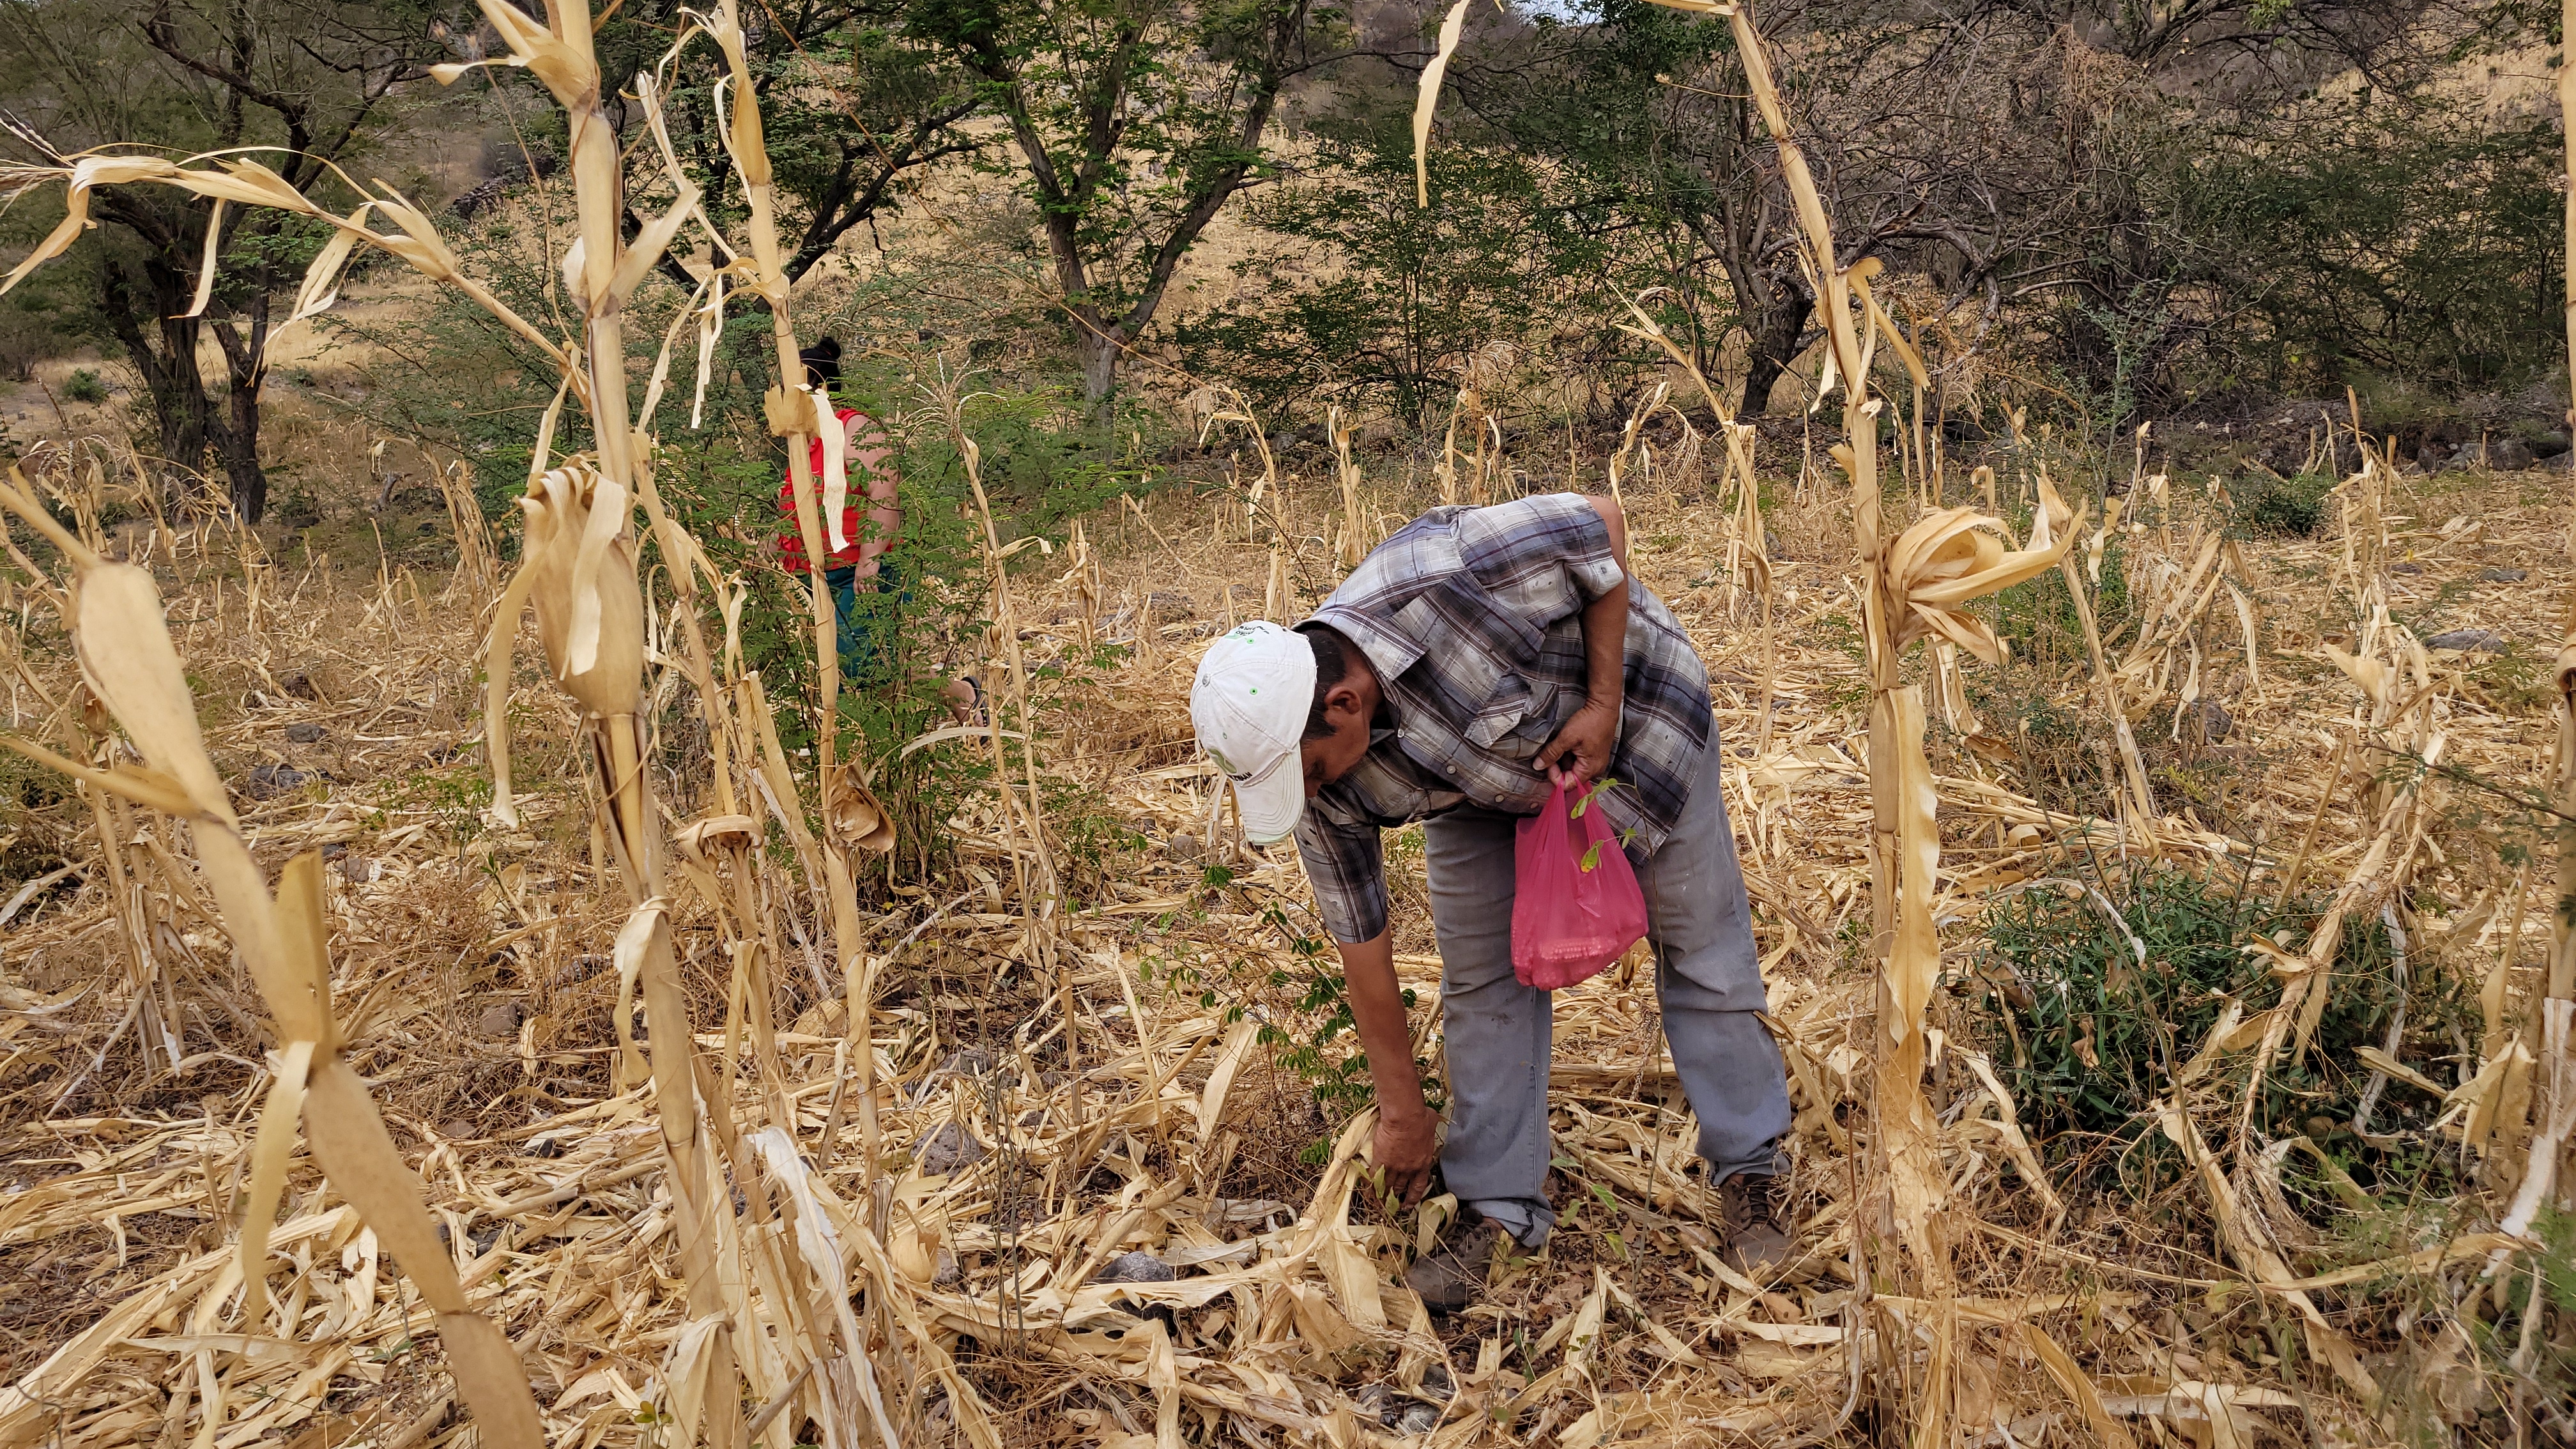 Cultivos de maíz destruidos por la sequía en el Corredor Seco de Honduras. Foto: WFP/Hetze Tosta